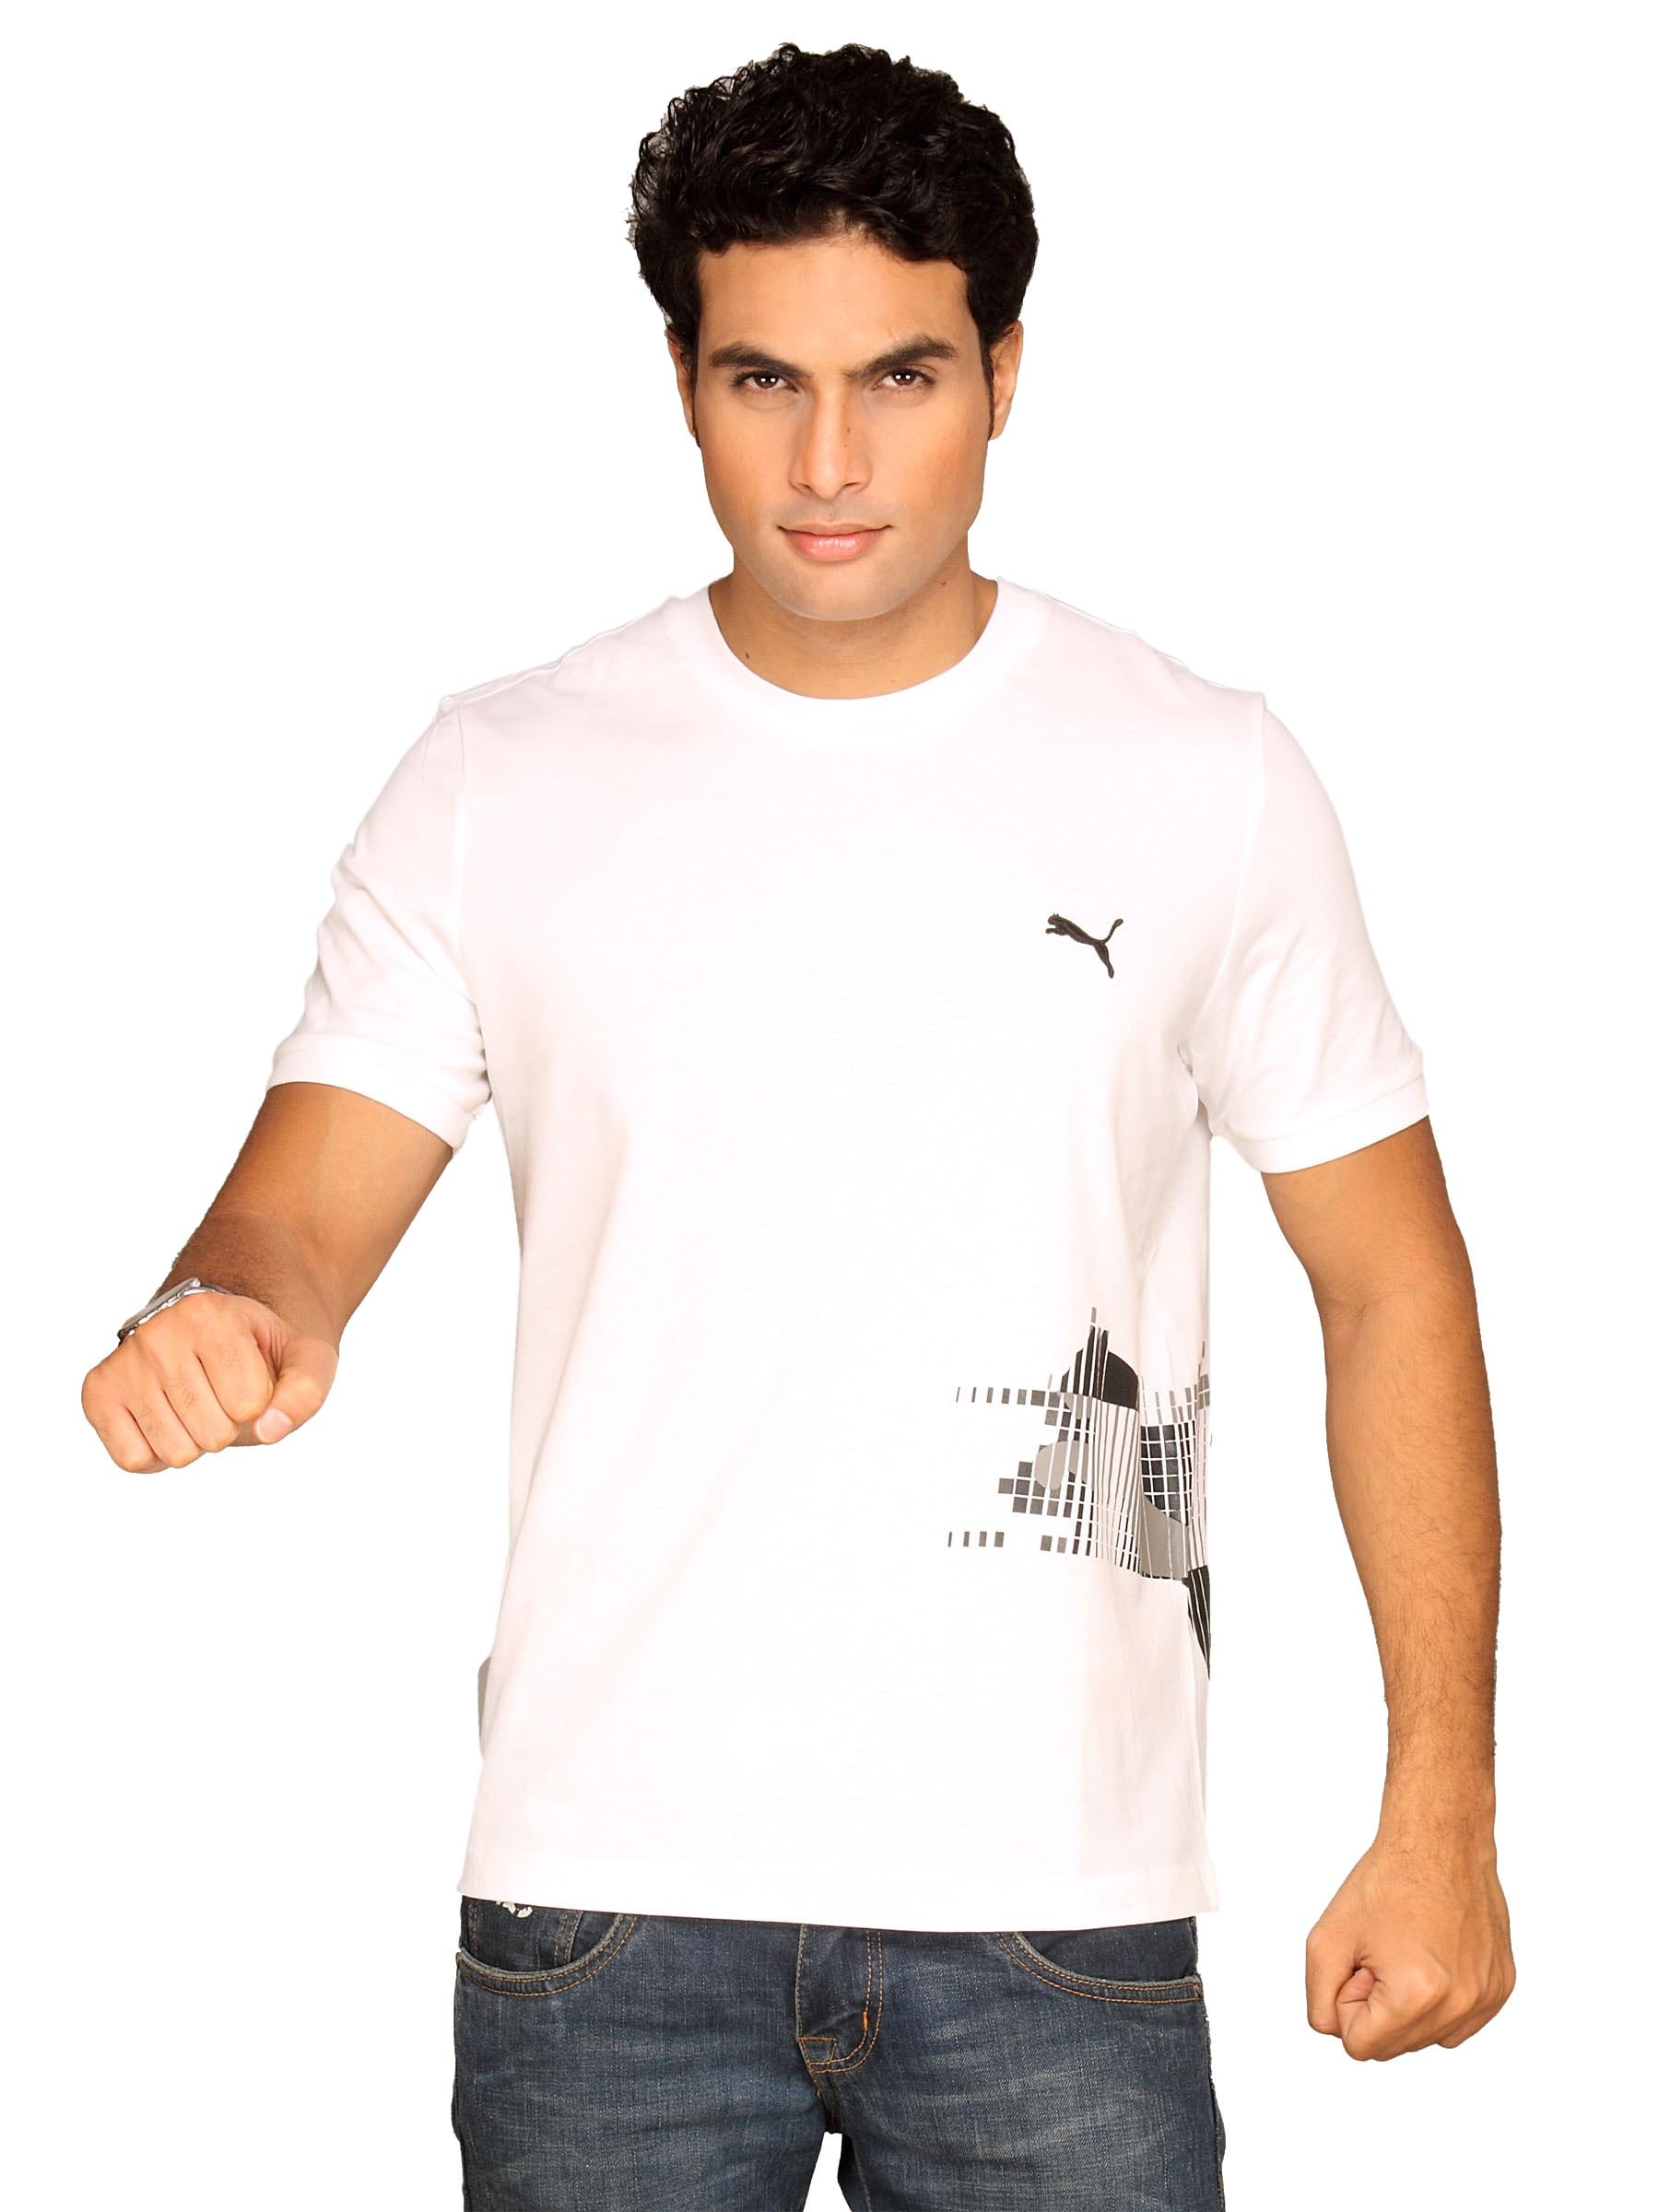 Puma Men's Summer Graphic White Black T-shirt